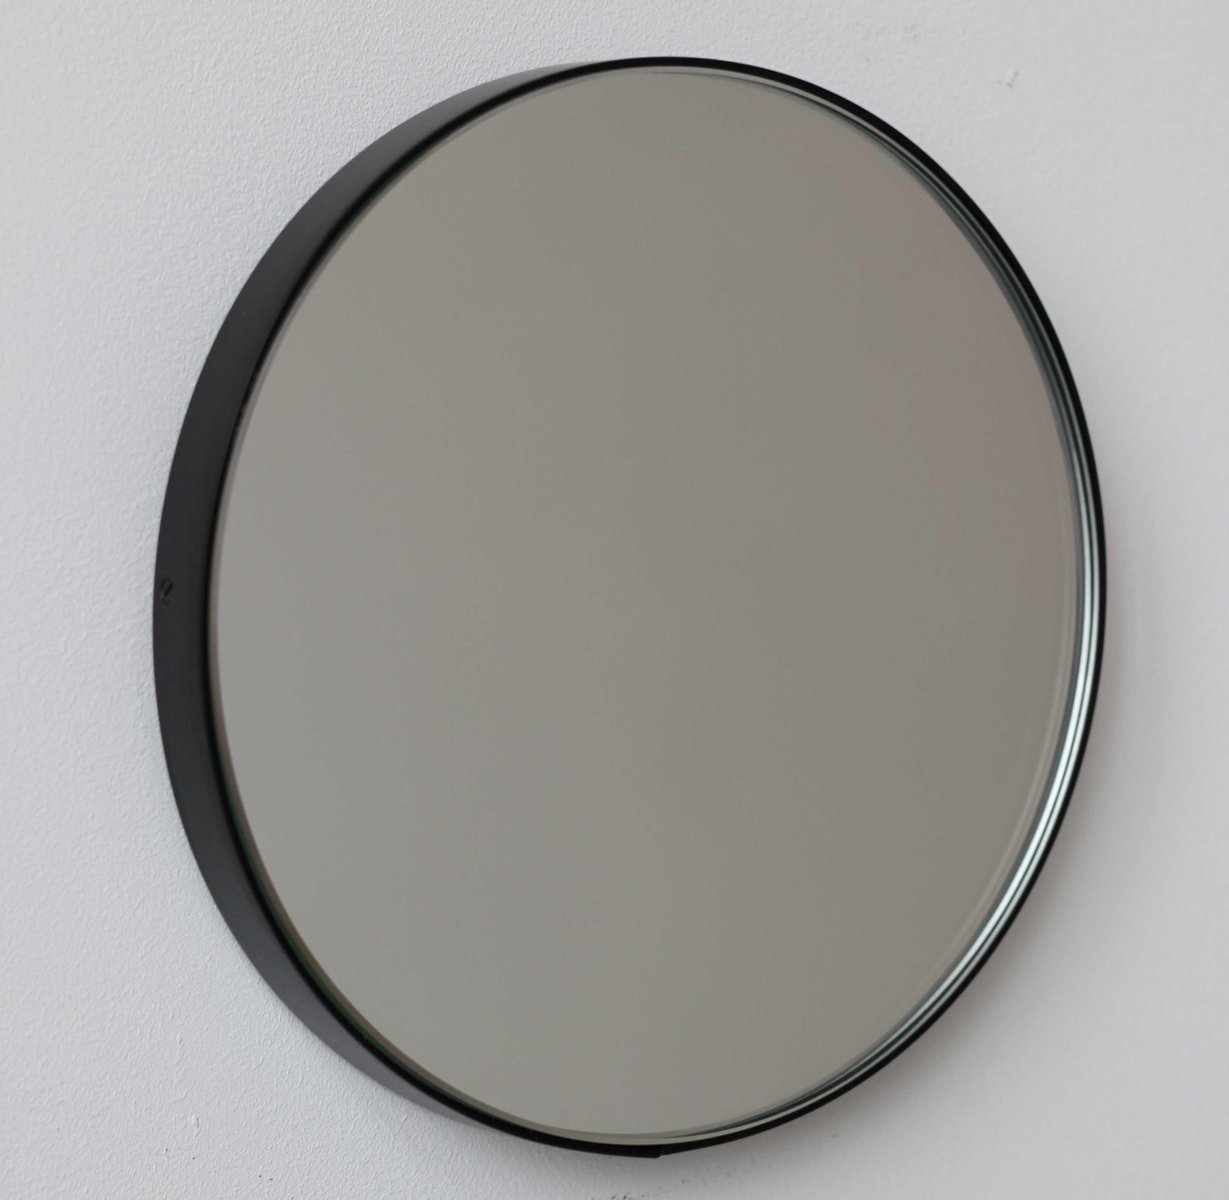 Small Silver Orbis Round Mirror With, Black Framed Round Mirror 50cm